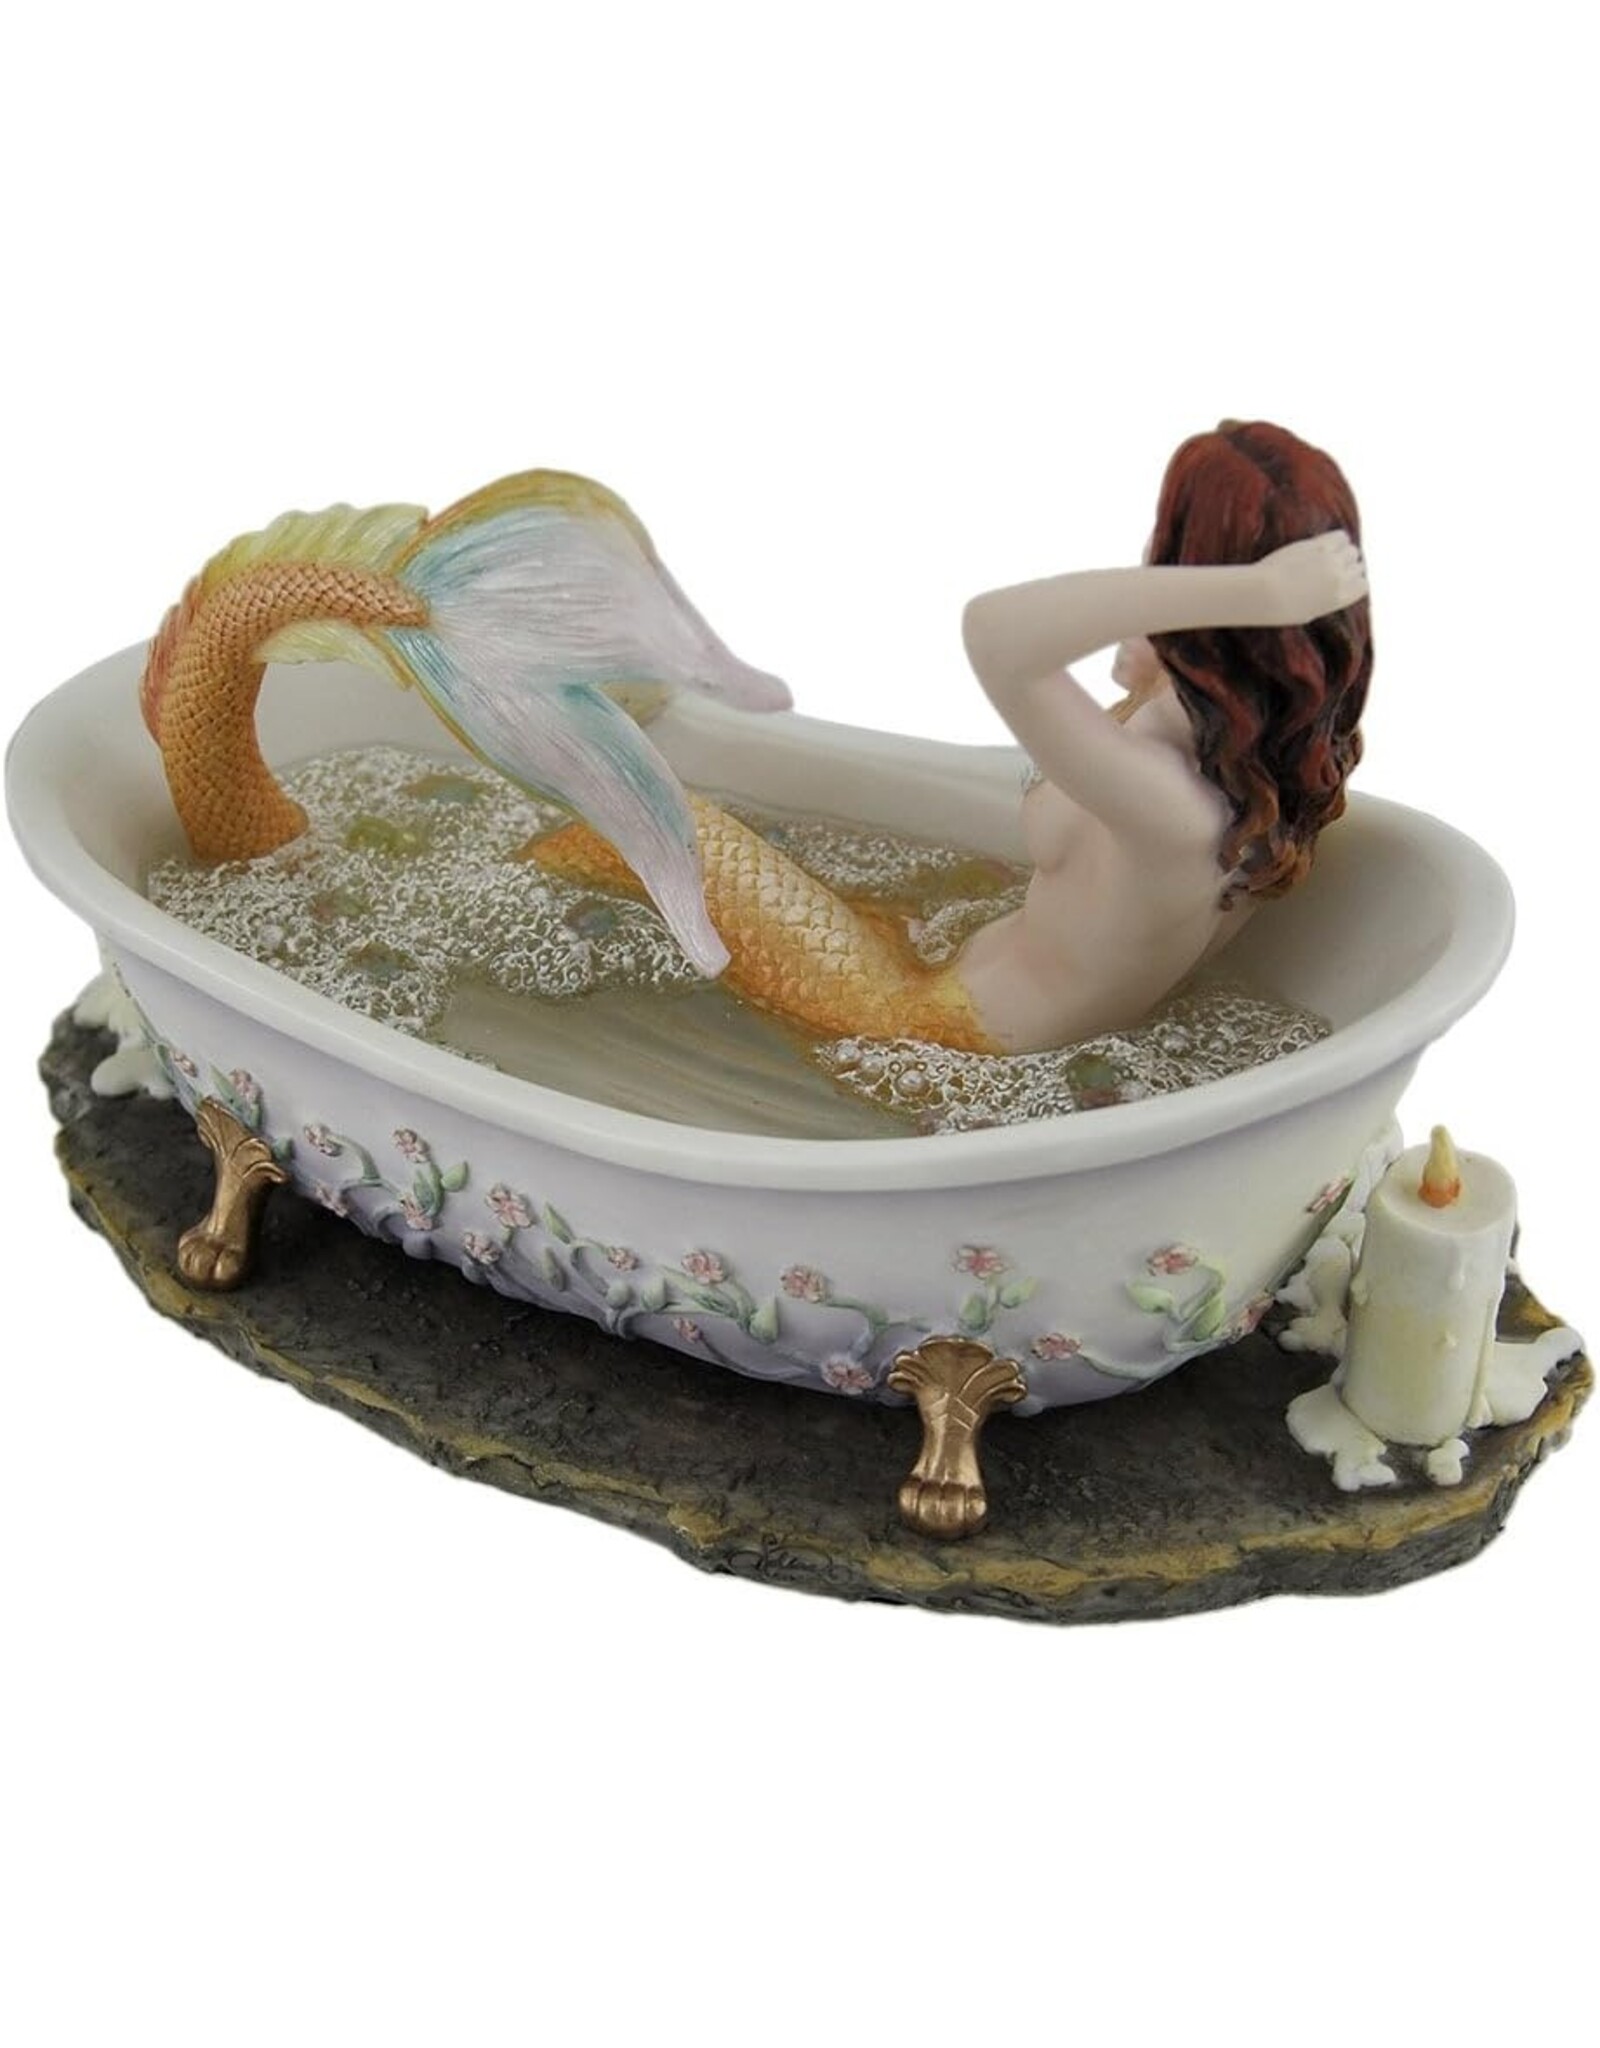 Veronese Design Giftware & Lifestyle - Bathtime door Selina Fenech - Zeemeermin in een Badkuip